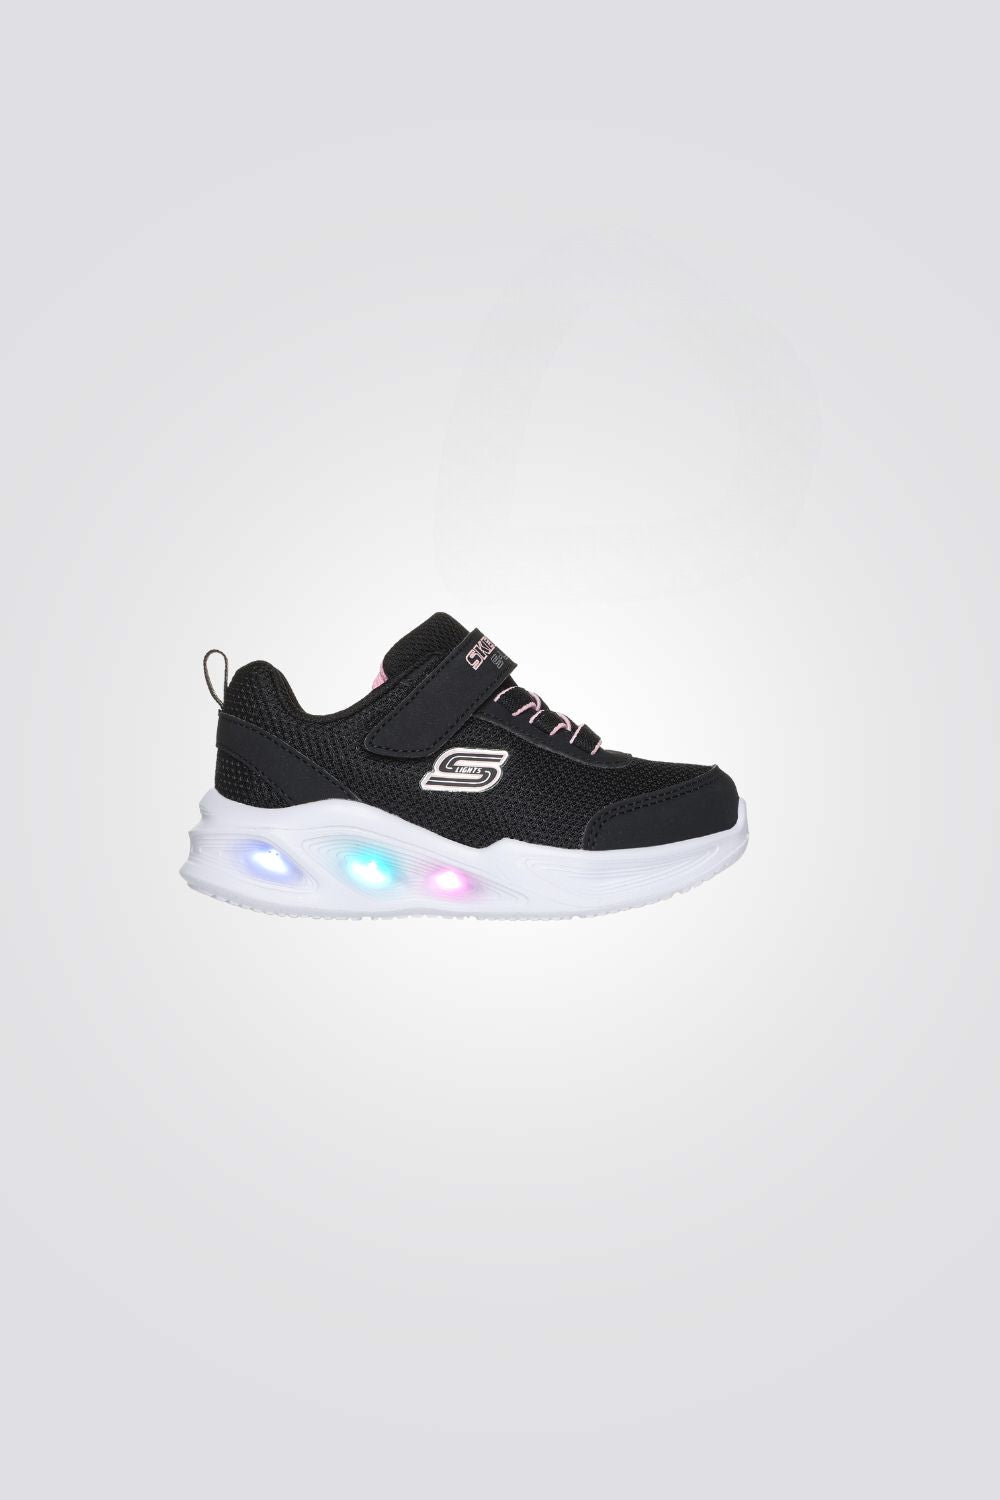 נעלי ספורט לתינוקות Sola Glow בצבע שחור ולבן